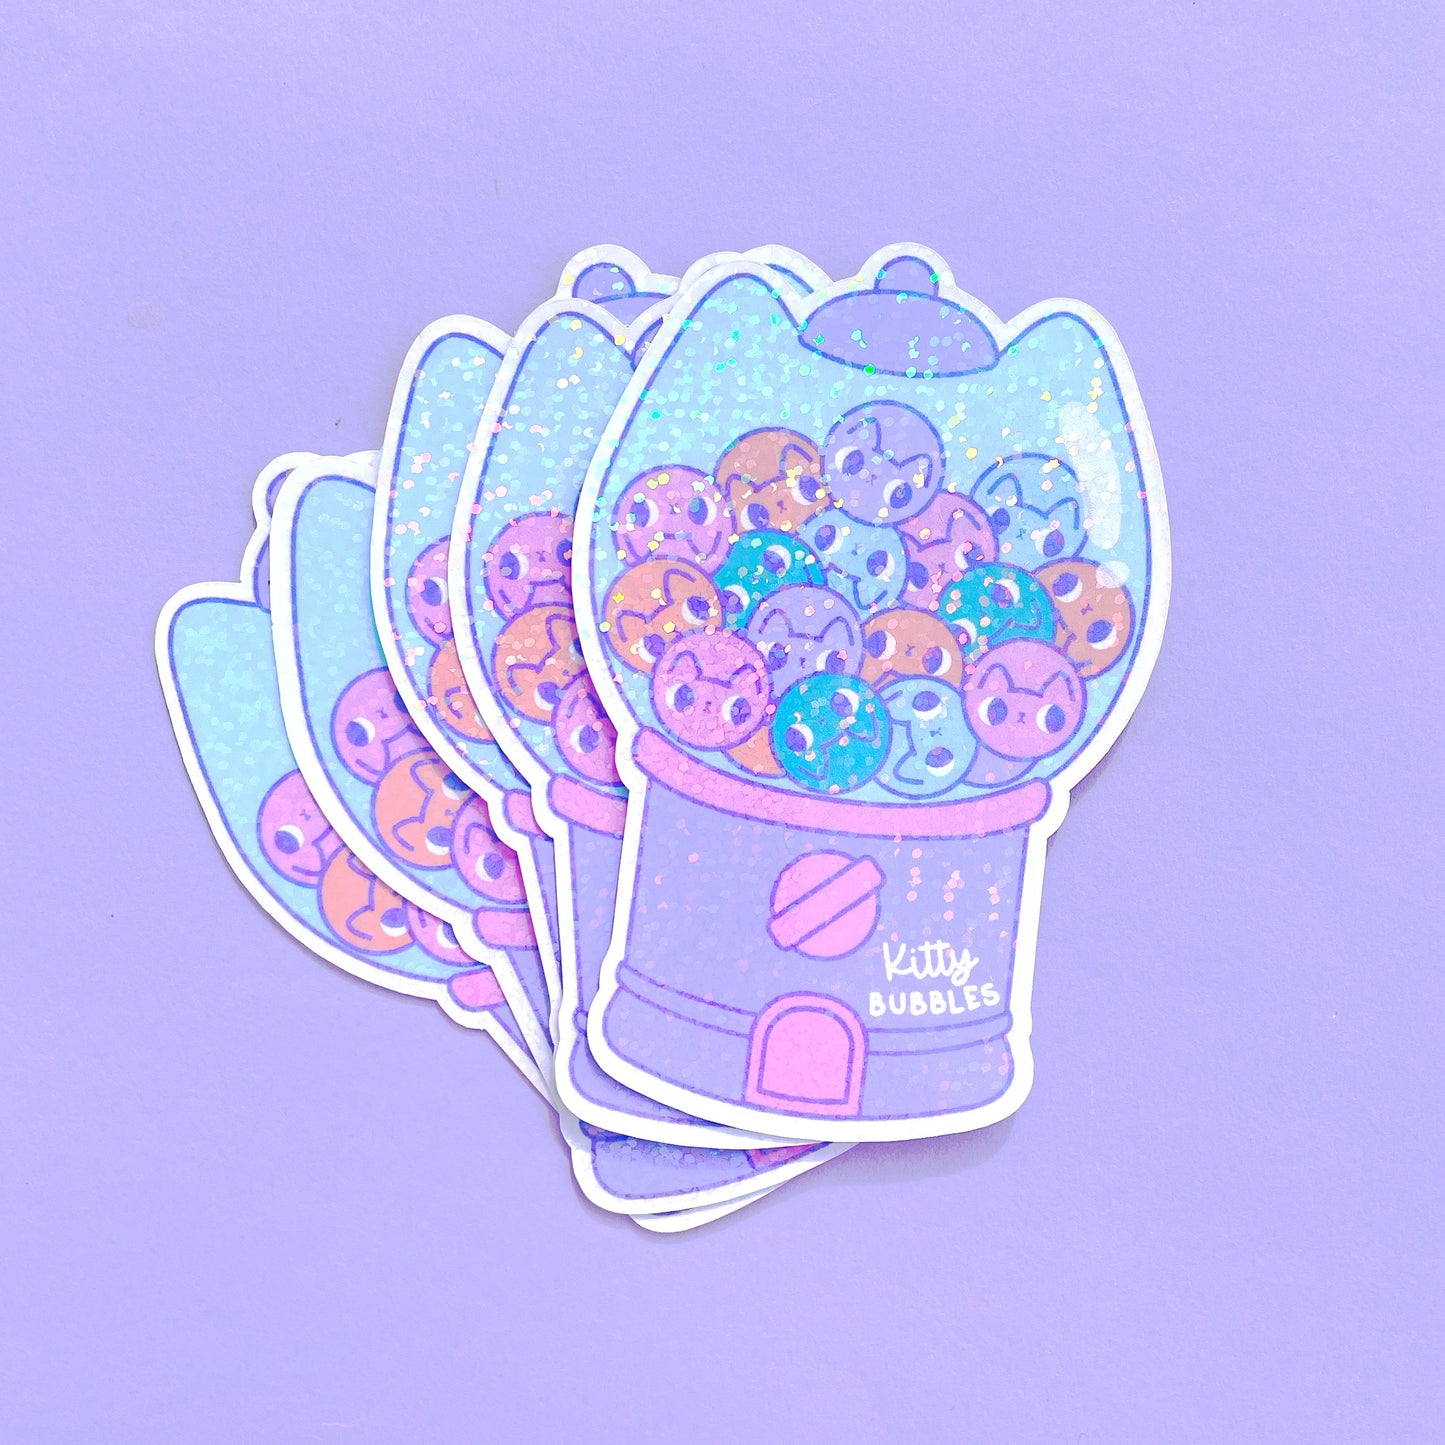 Cat bubblegum sparkly holographic vinyl sticker super cute kawaii sticker